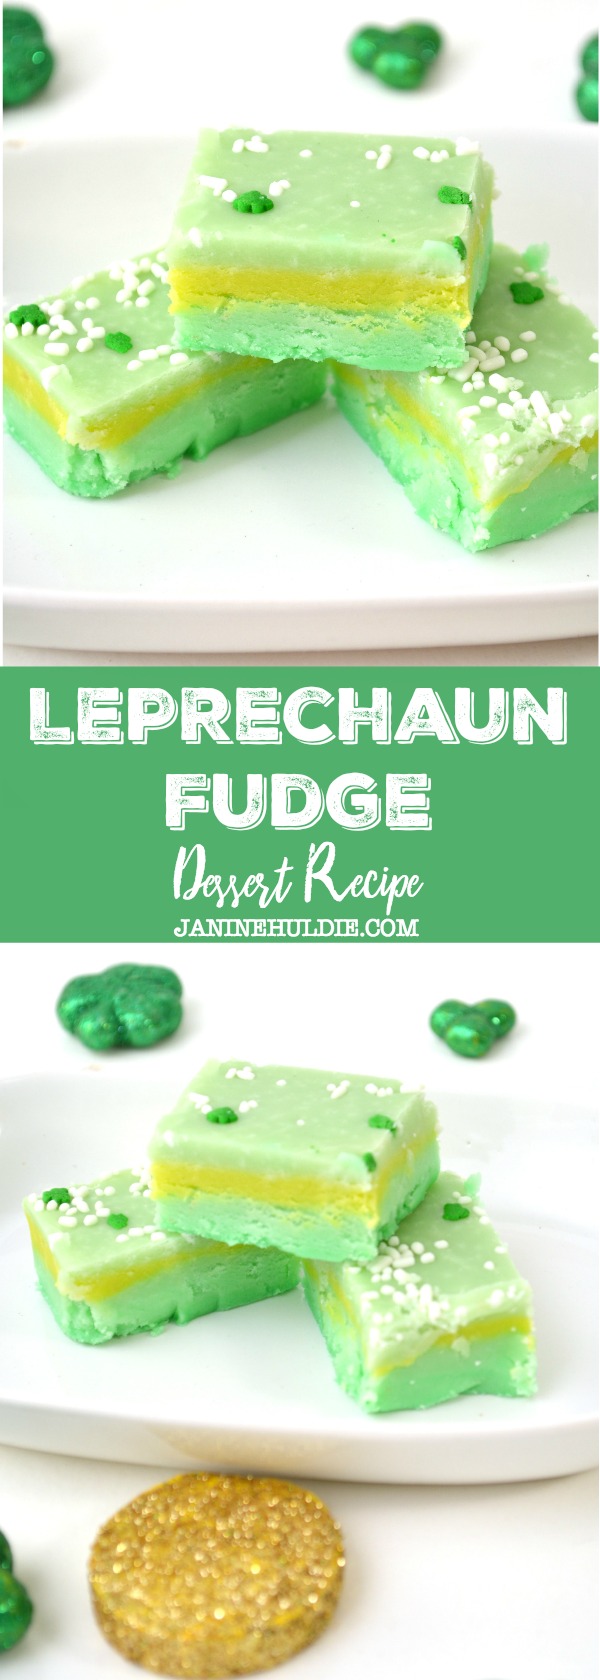 Leprechaun Fudge Dessert Recipe